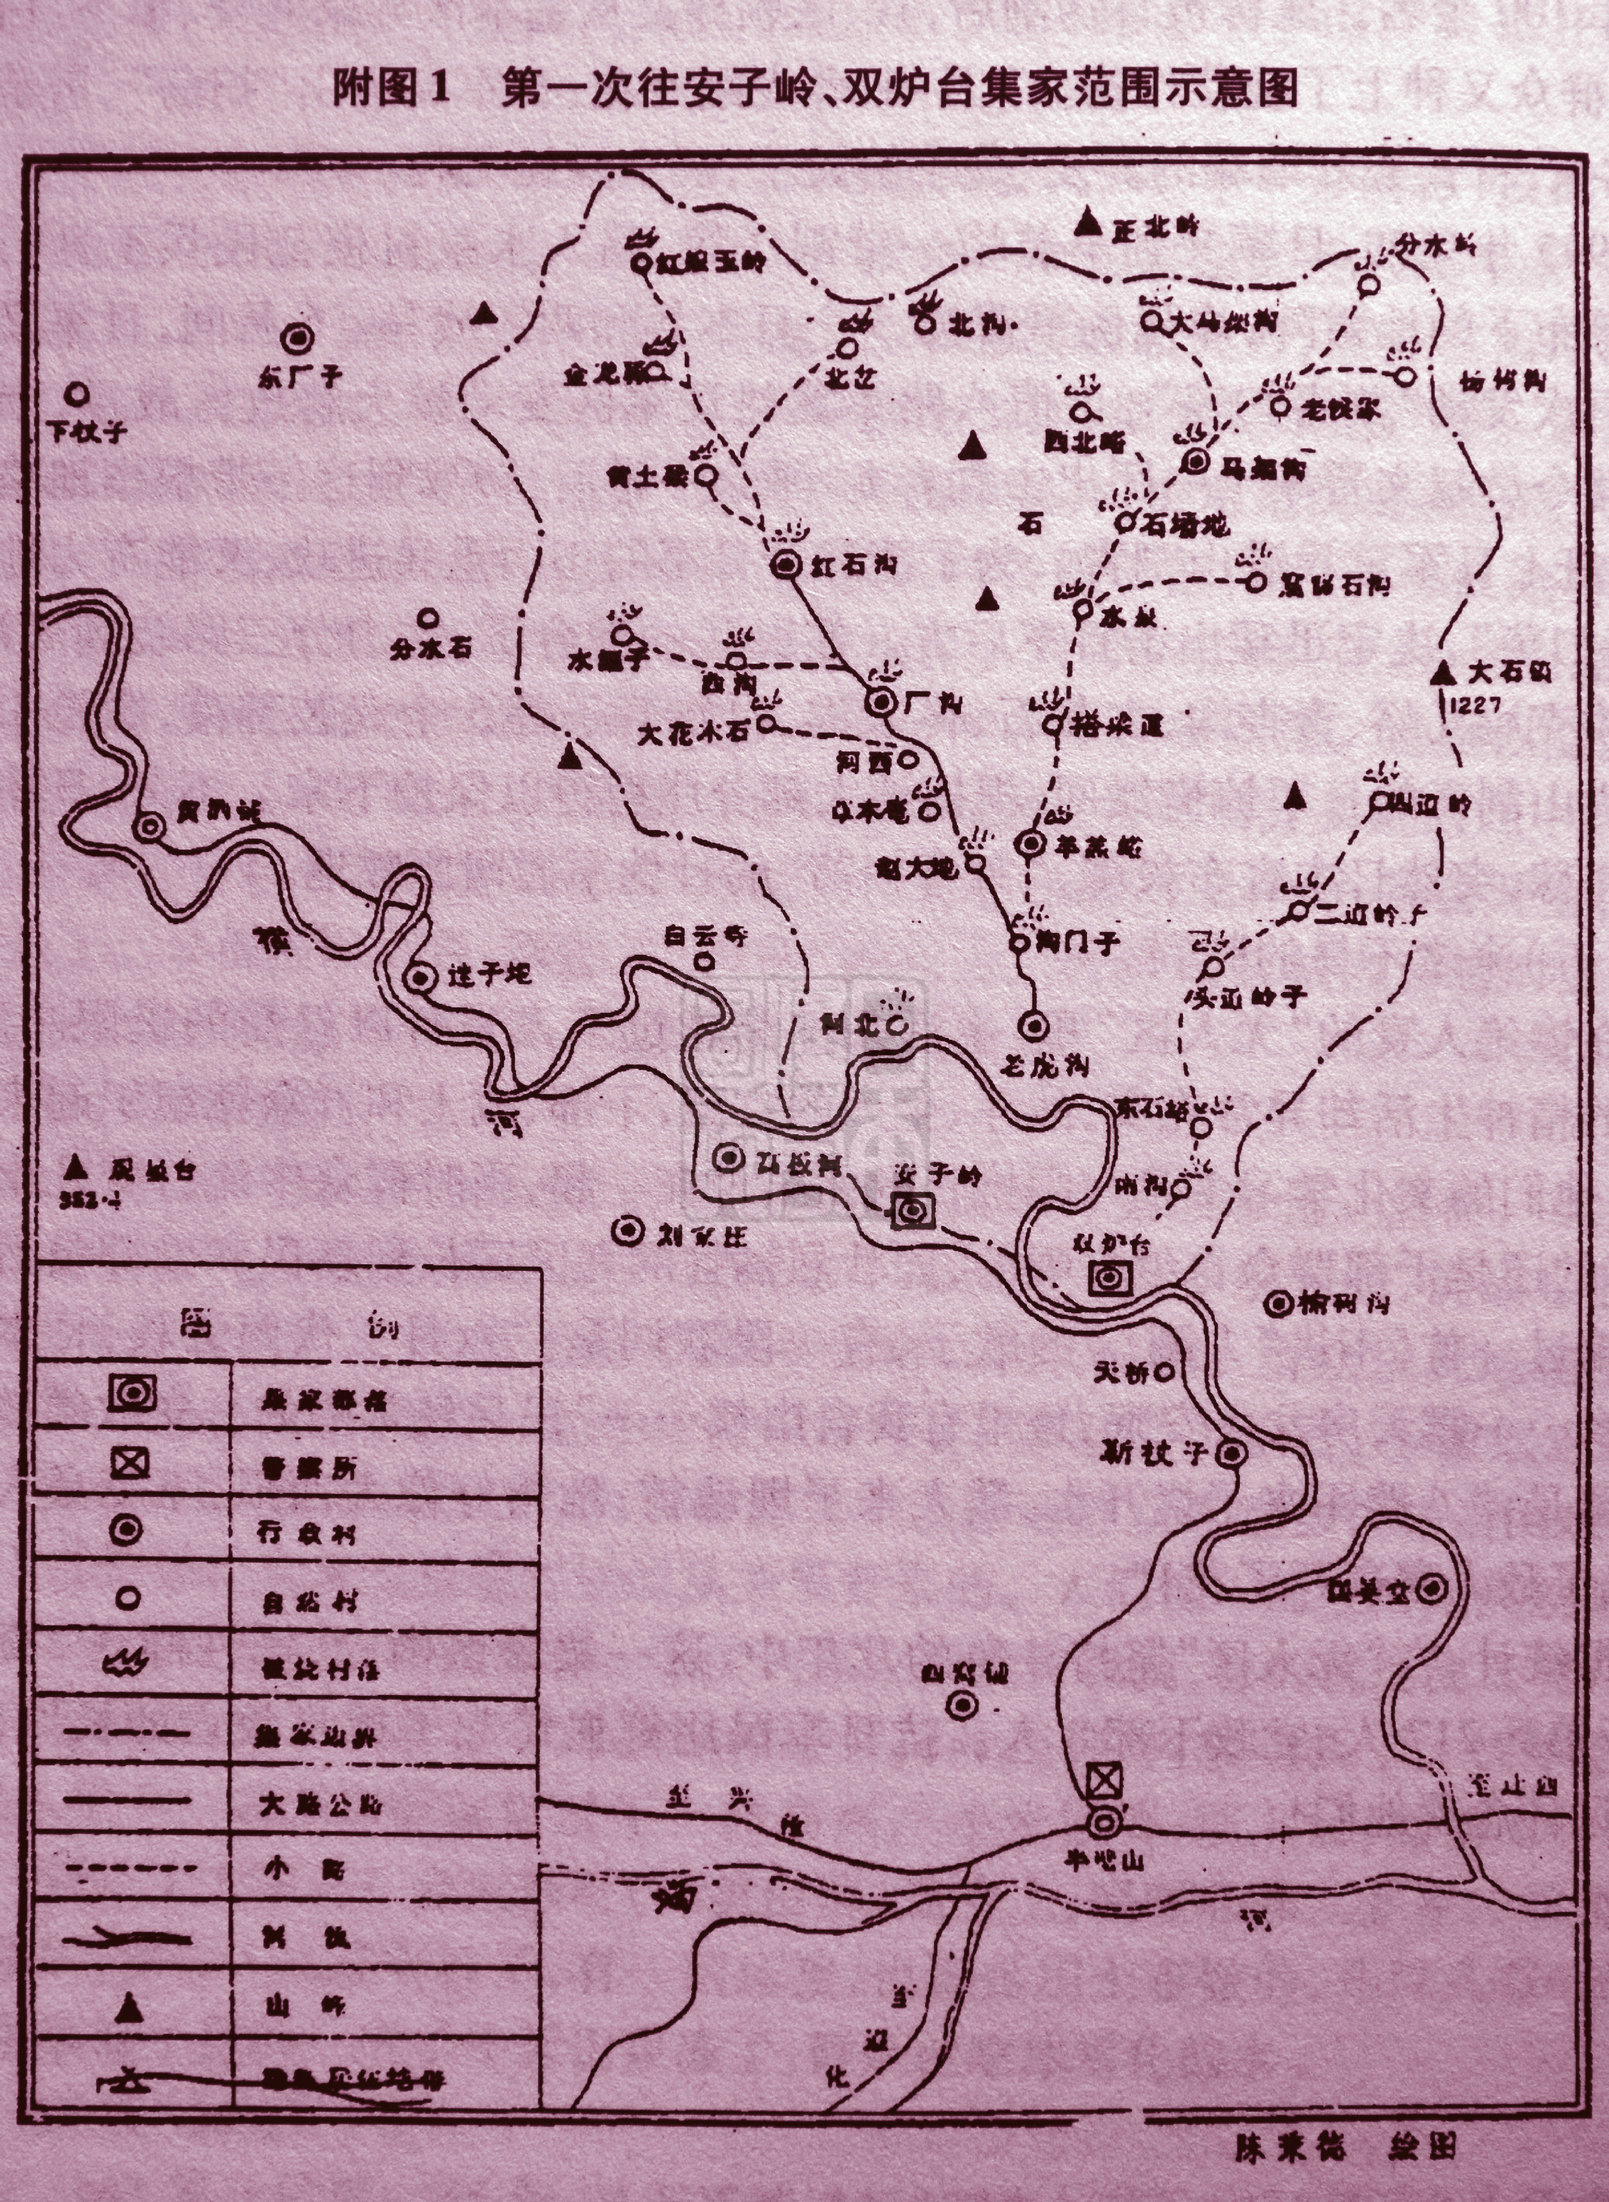 碉堡密布,壁垒森严:日军为清剿抗日武装,在各地大肆圈占无人区